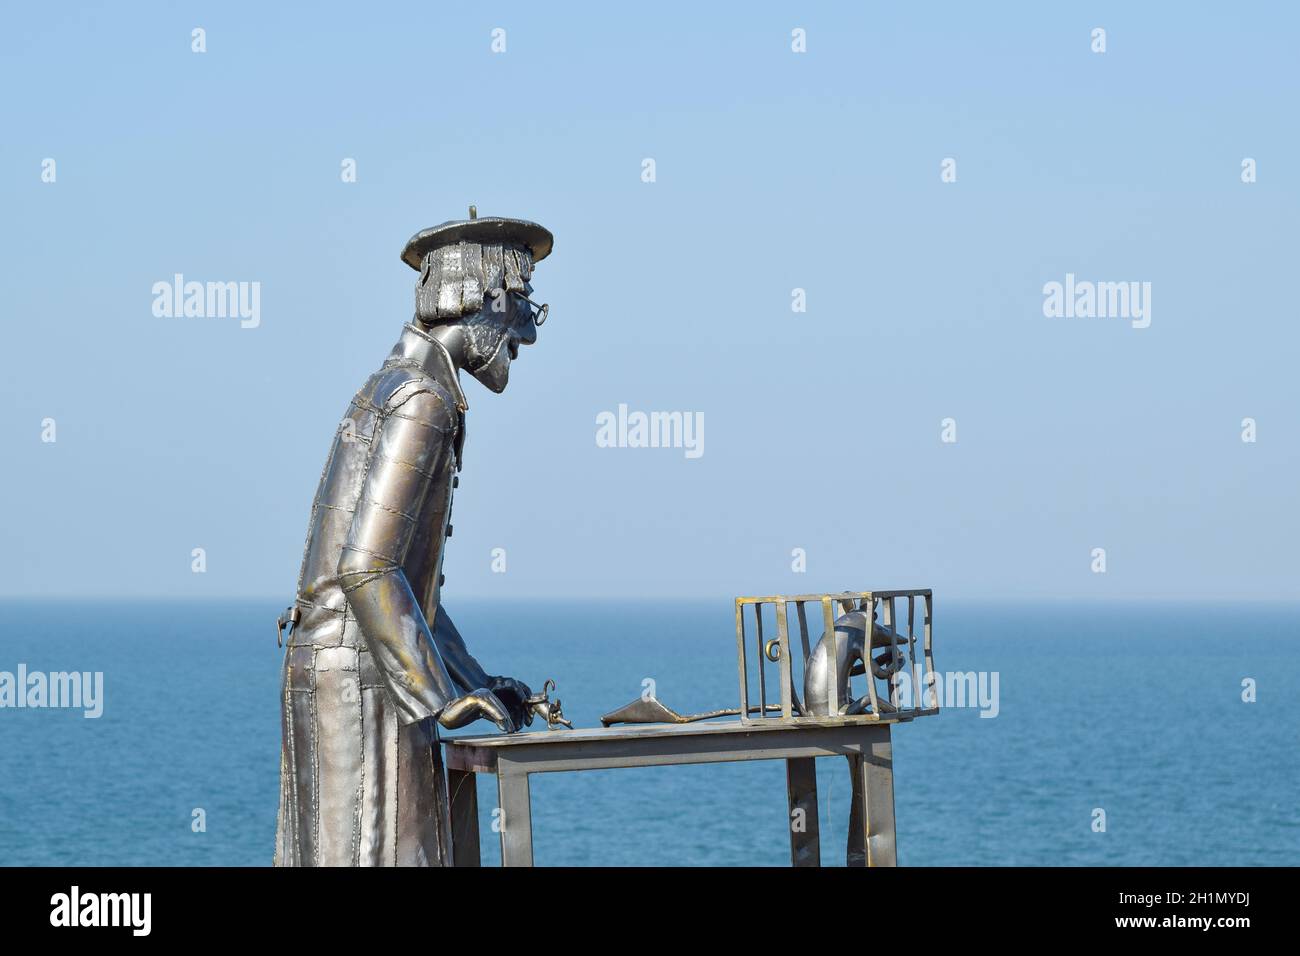 Statue von einem Kürschner aus Metall mit einer Ratte in einem Käfig. Metall-Statue. Stockfoto